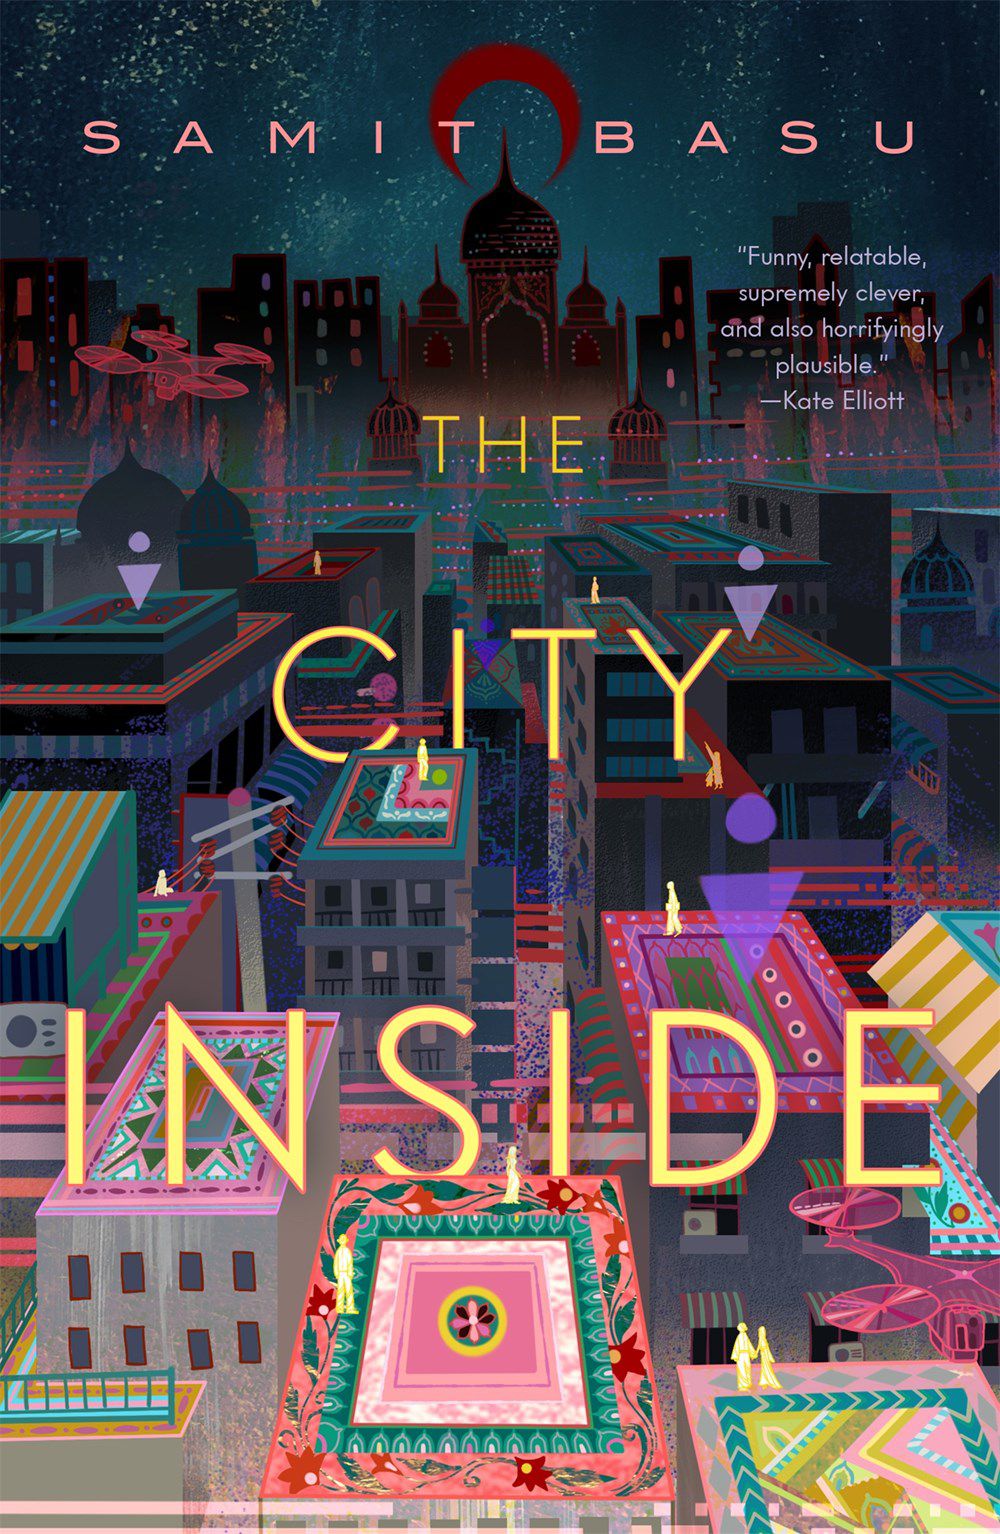 Immagine di copertina di The City Inside di Samit Basu, con un'immagine colorata di Delhi.